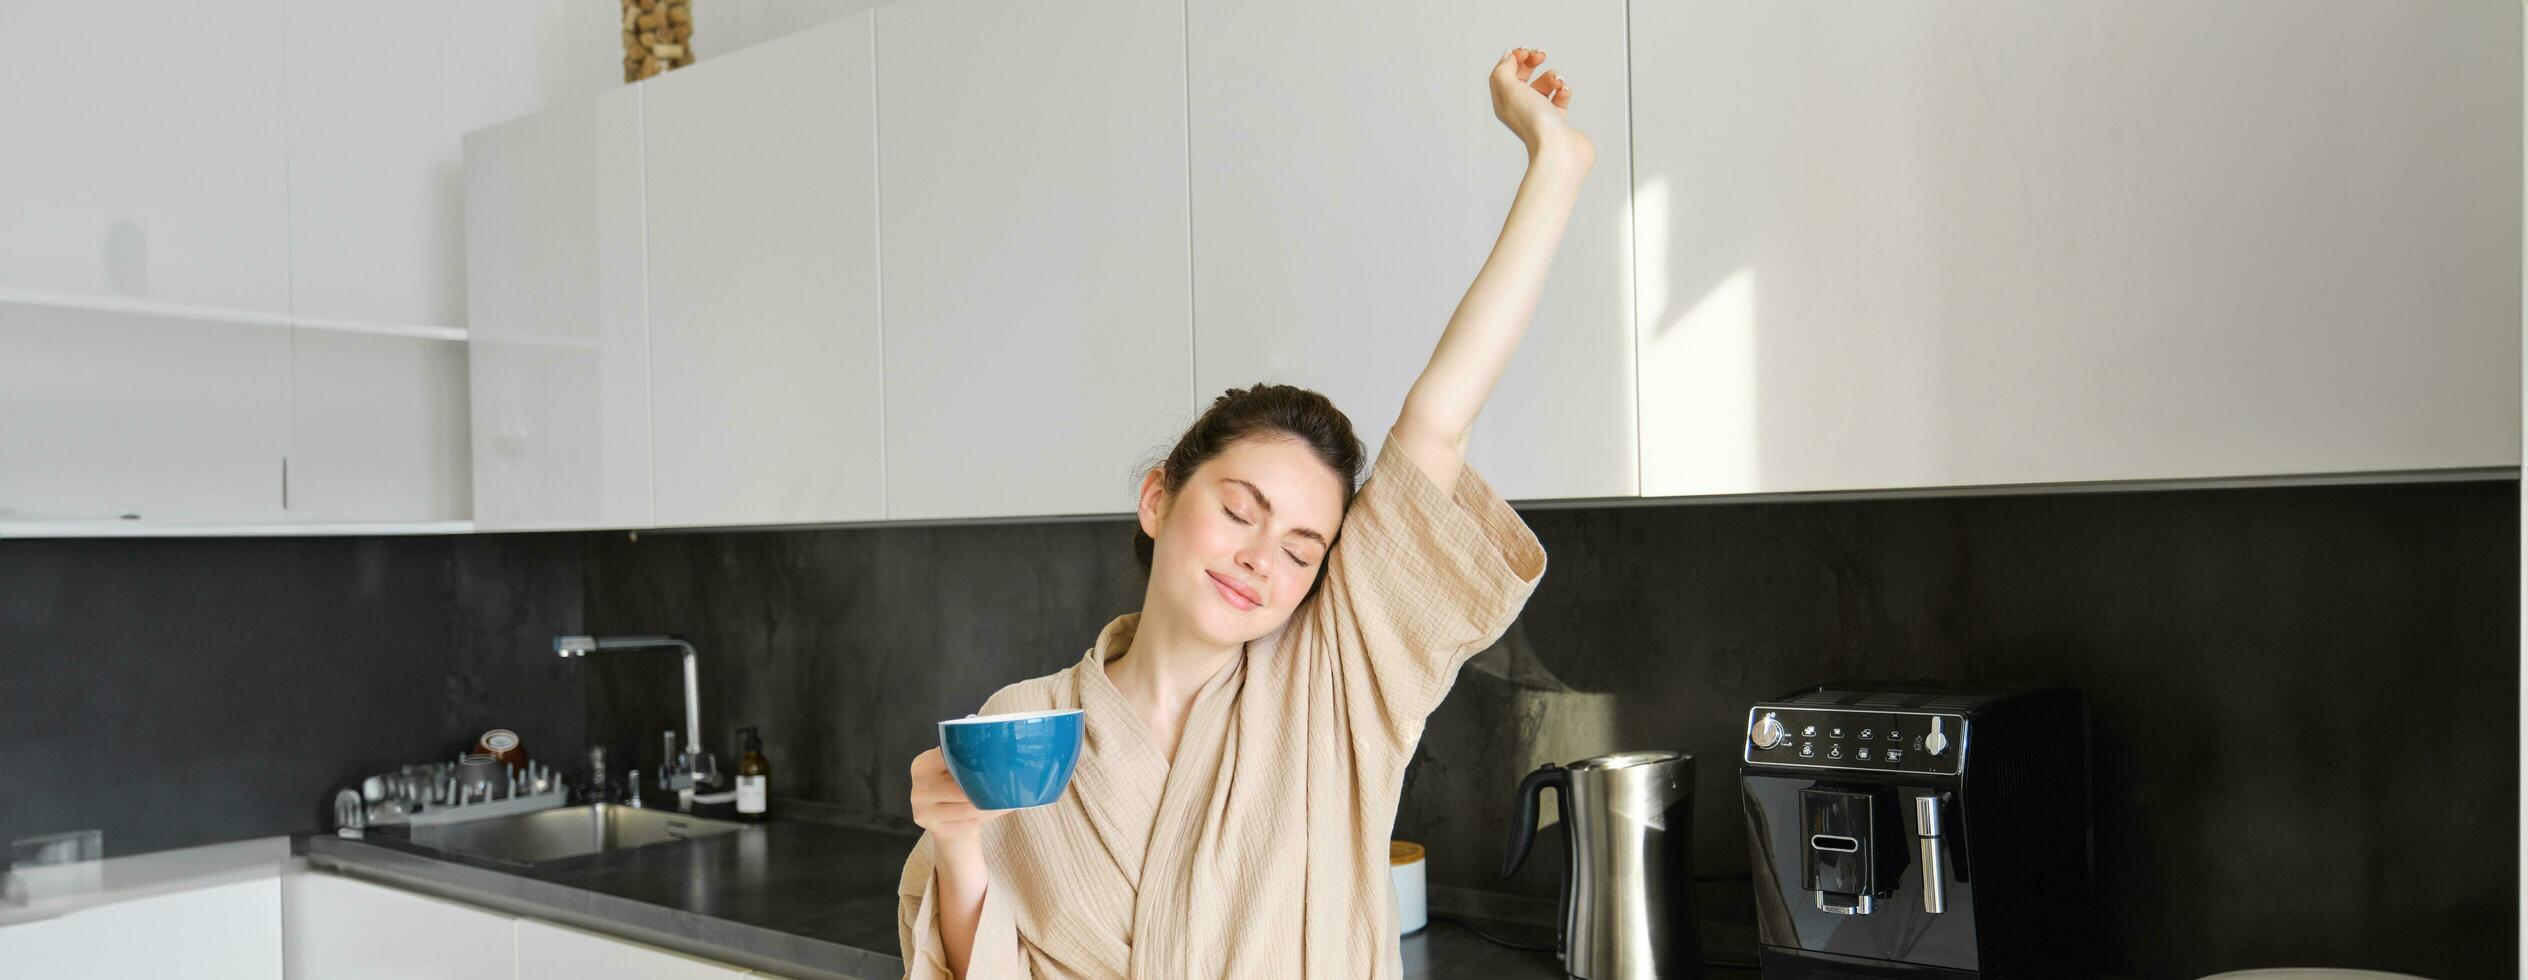 portrait de content fille dansant avec café dans le cuisine, portant peignoir de bain, profiter sa Matin routine photo